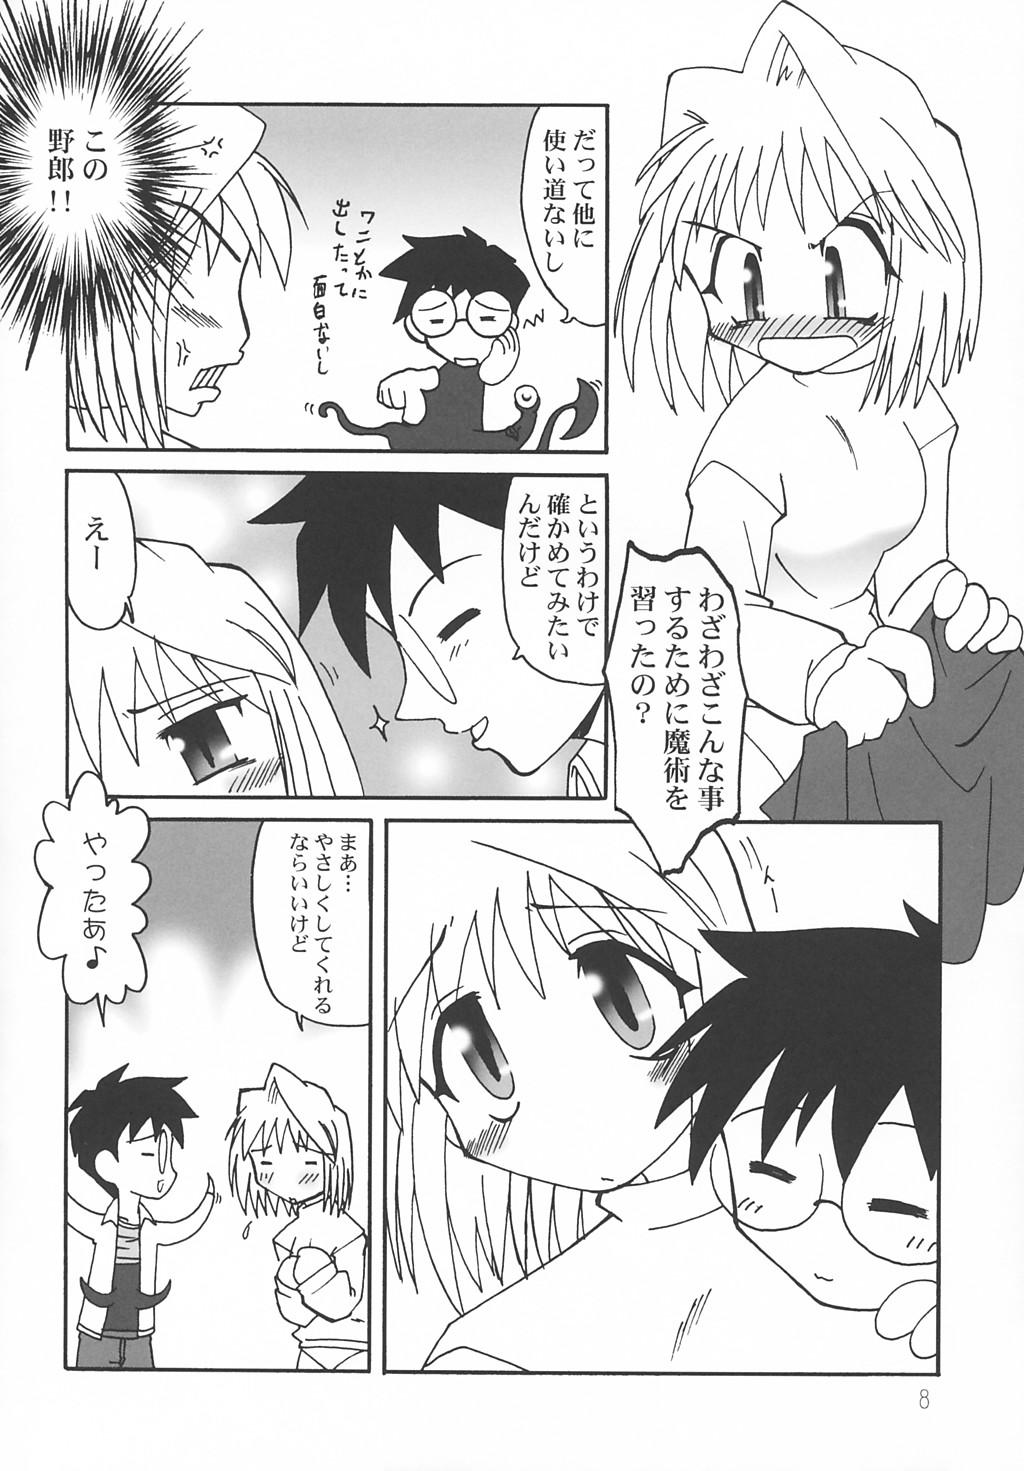 Pica Nanaya no Mori+ - Tsukihime Roleplay - Page 7